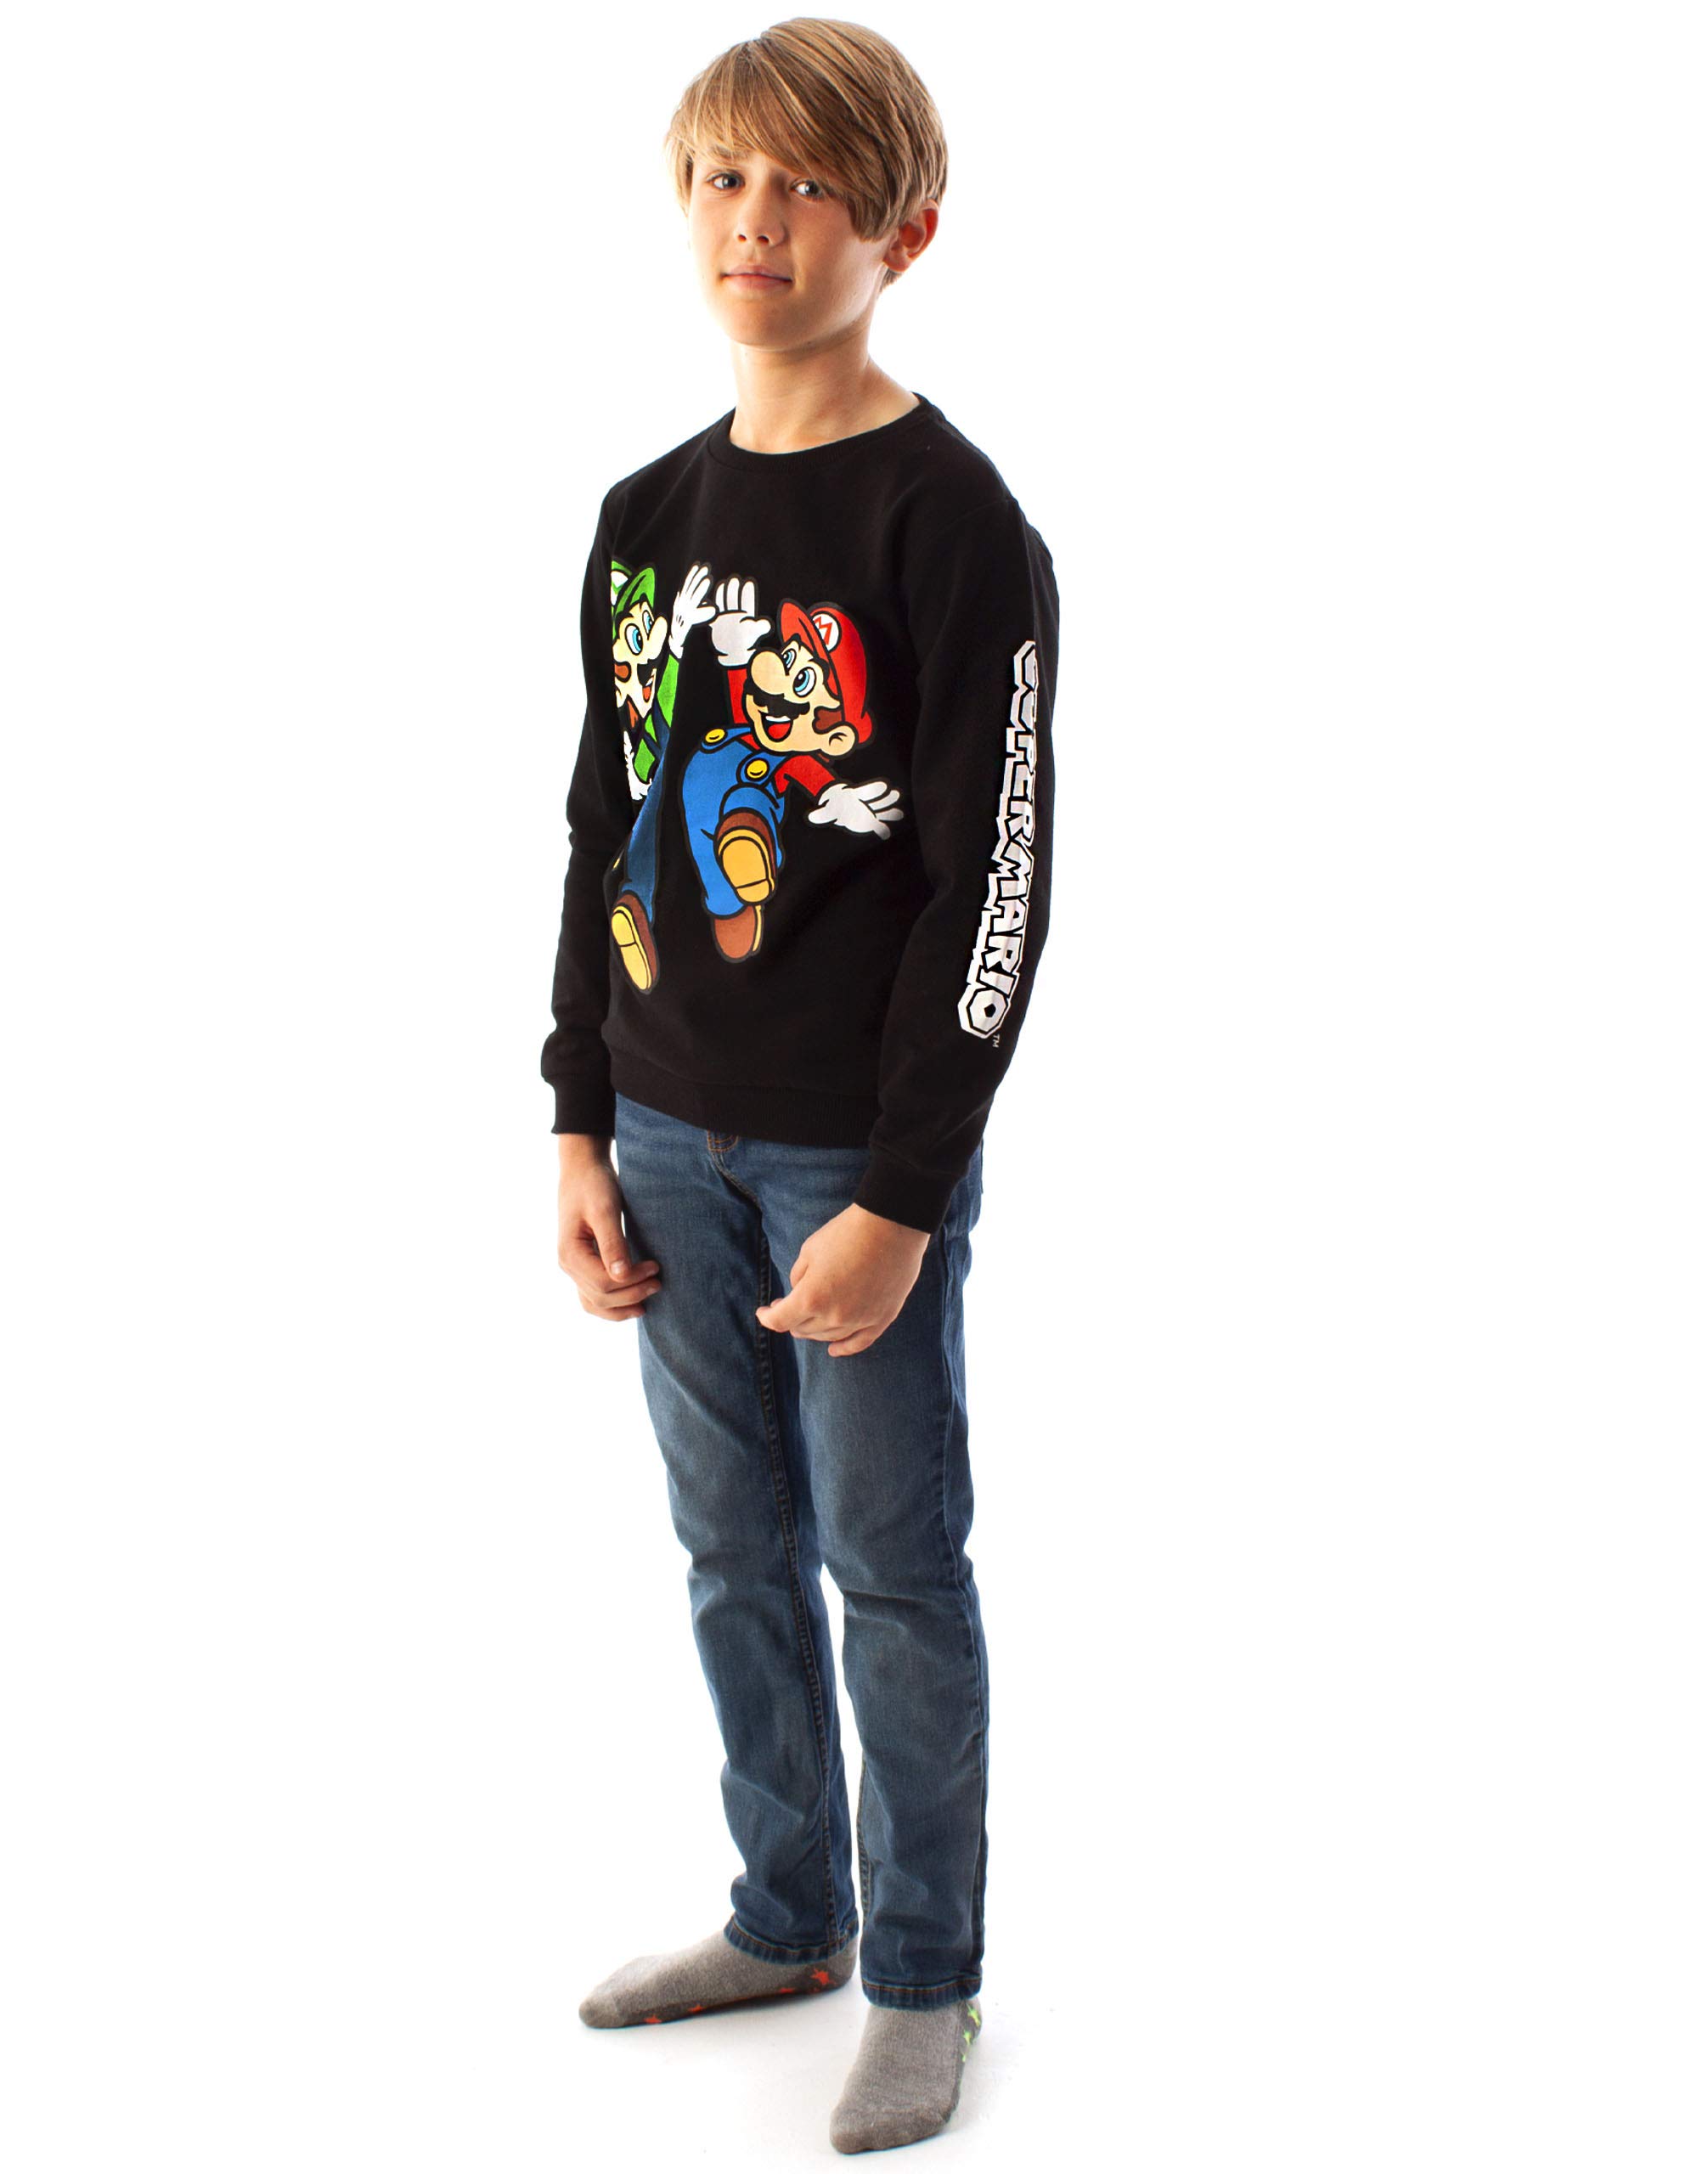 Super Mario Sweatshirt Luigi Character Gamers Black Long Sleeve Kids Boys Jumper 11-12 Years